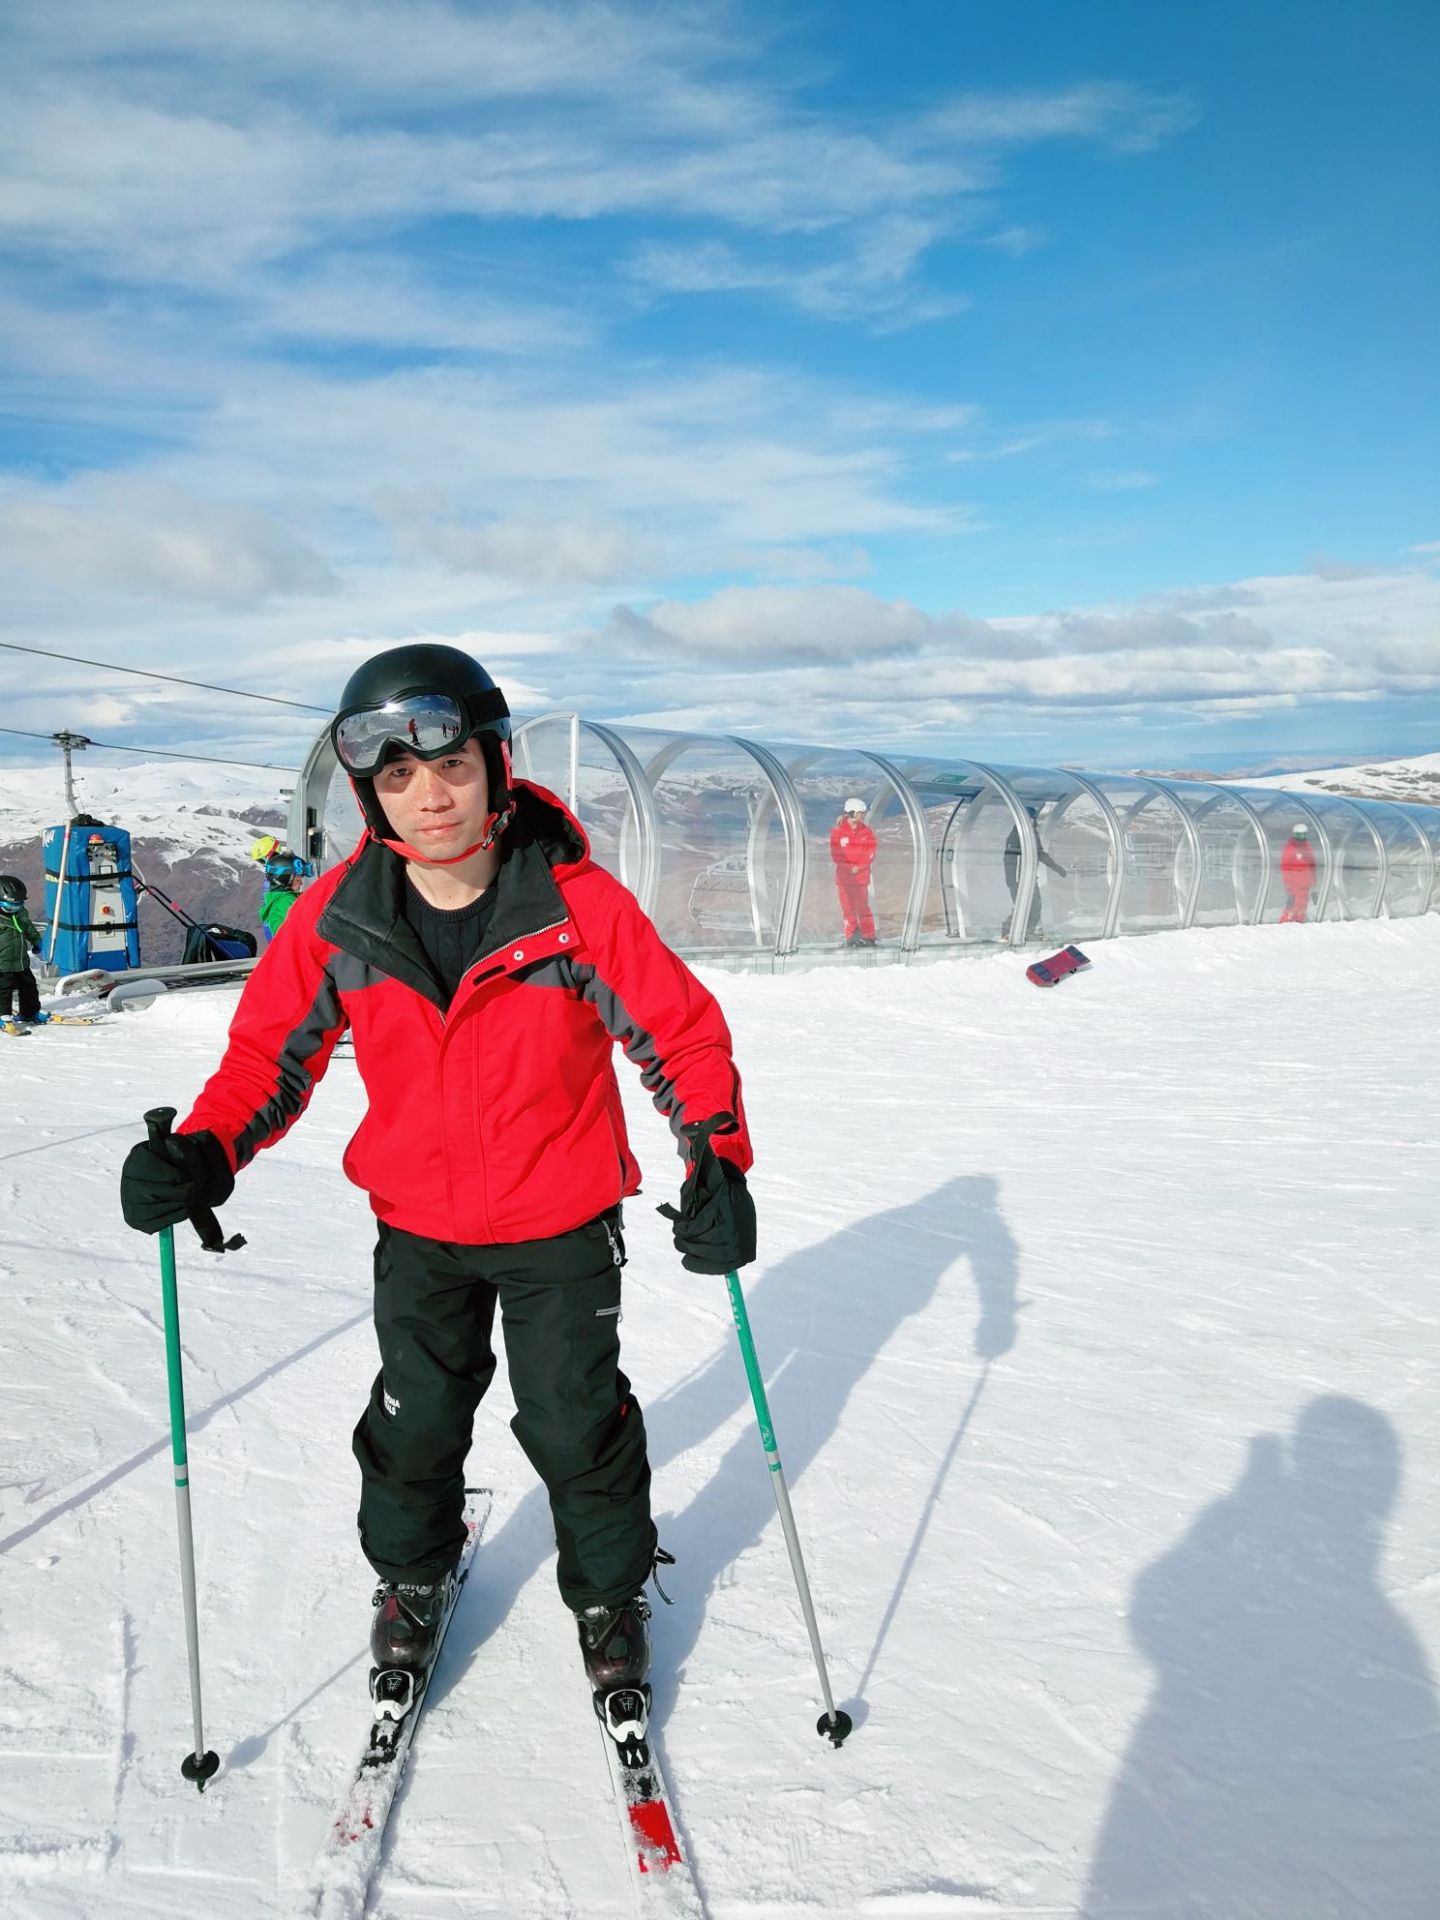 来到了南半球的冬季，怎能不去体验下冰雪运动皇后镇附近著名的卡德罗纳滑雪场，虽然是新手，但在教练的知道